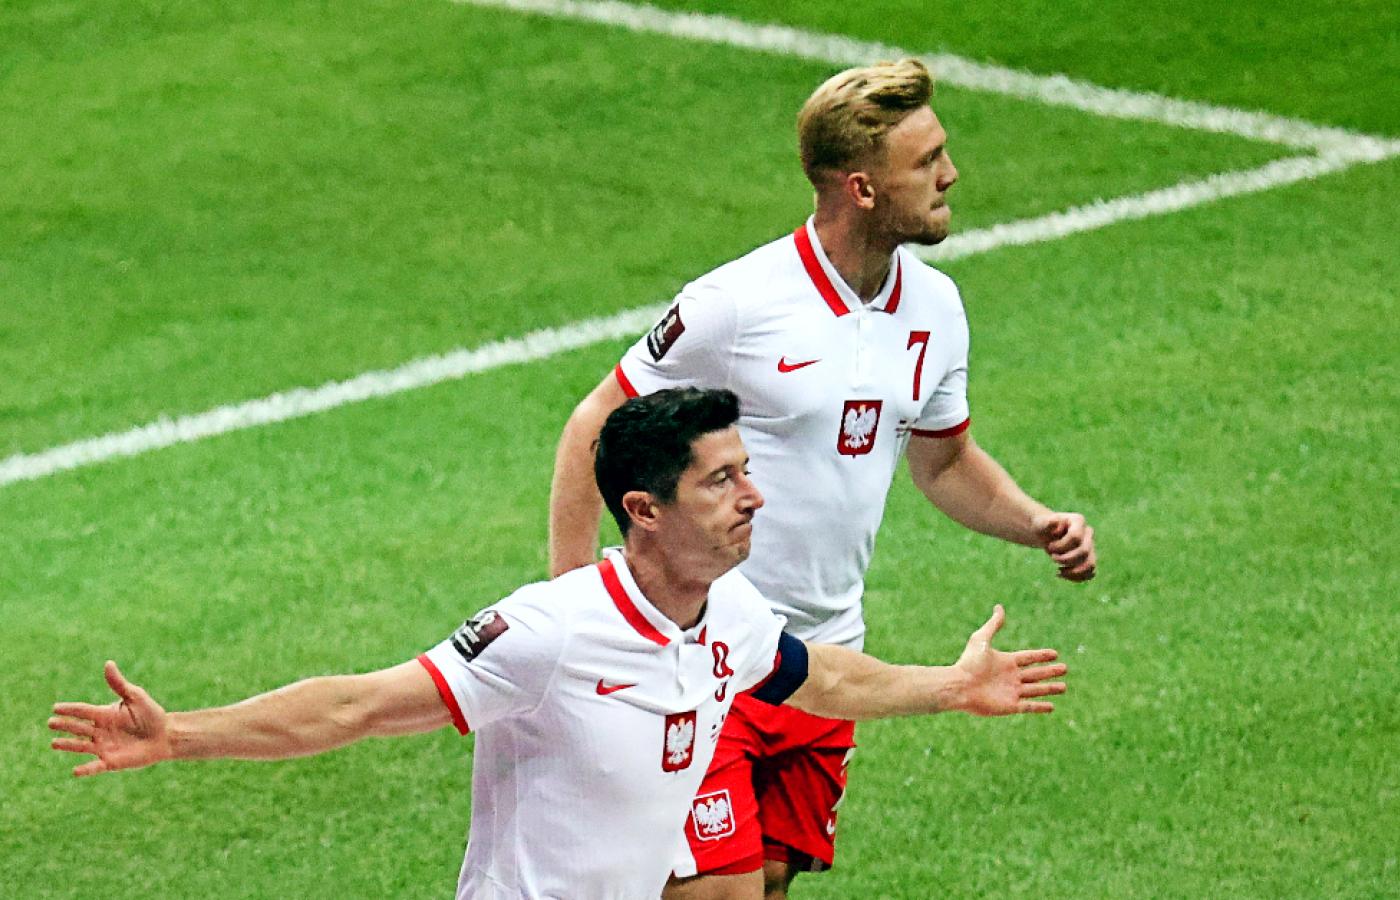 Kapitan Robert Lewandowski pomógł reprezentacji wygrać mecz eliminacji do mistrzostw świata z Albanią.